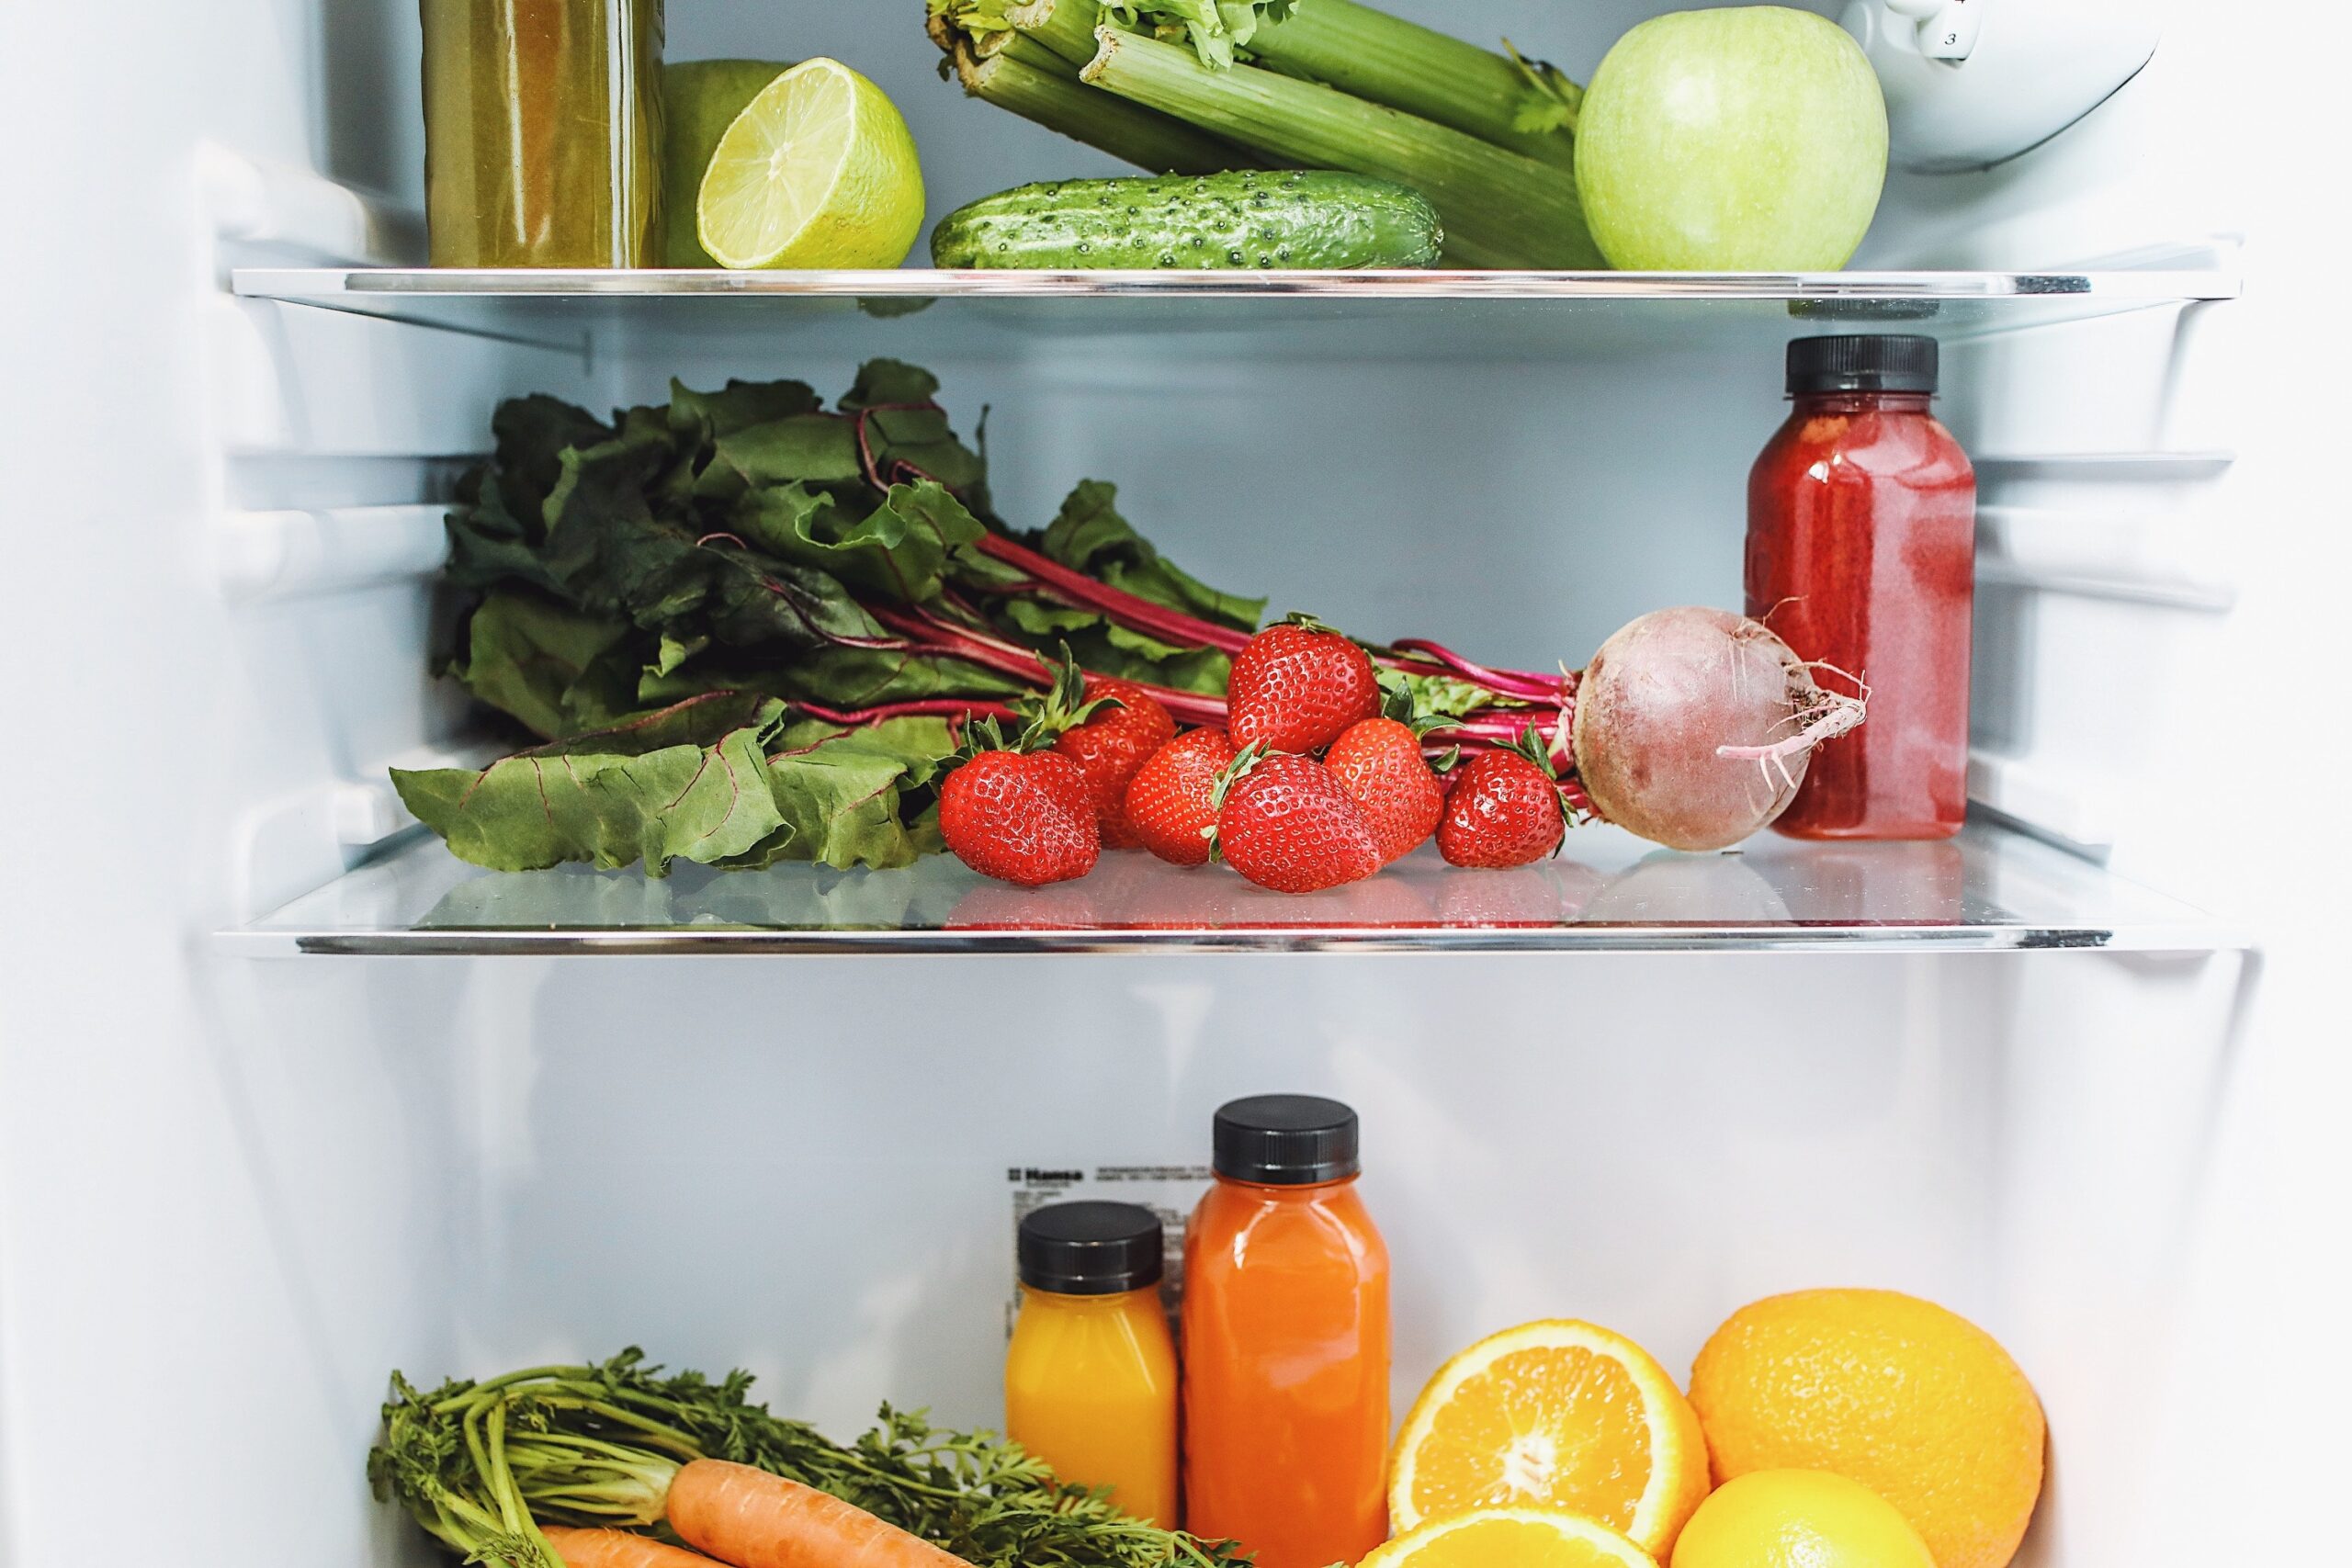 fridge with produce